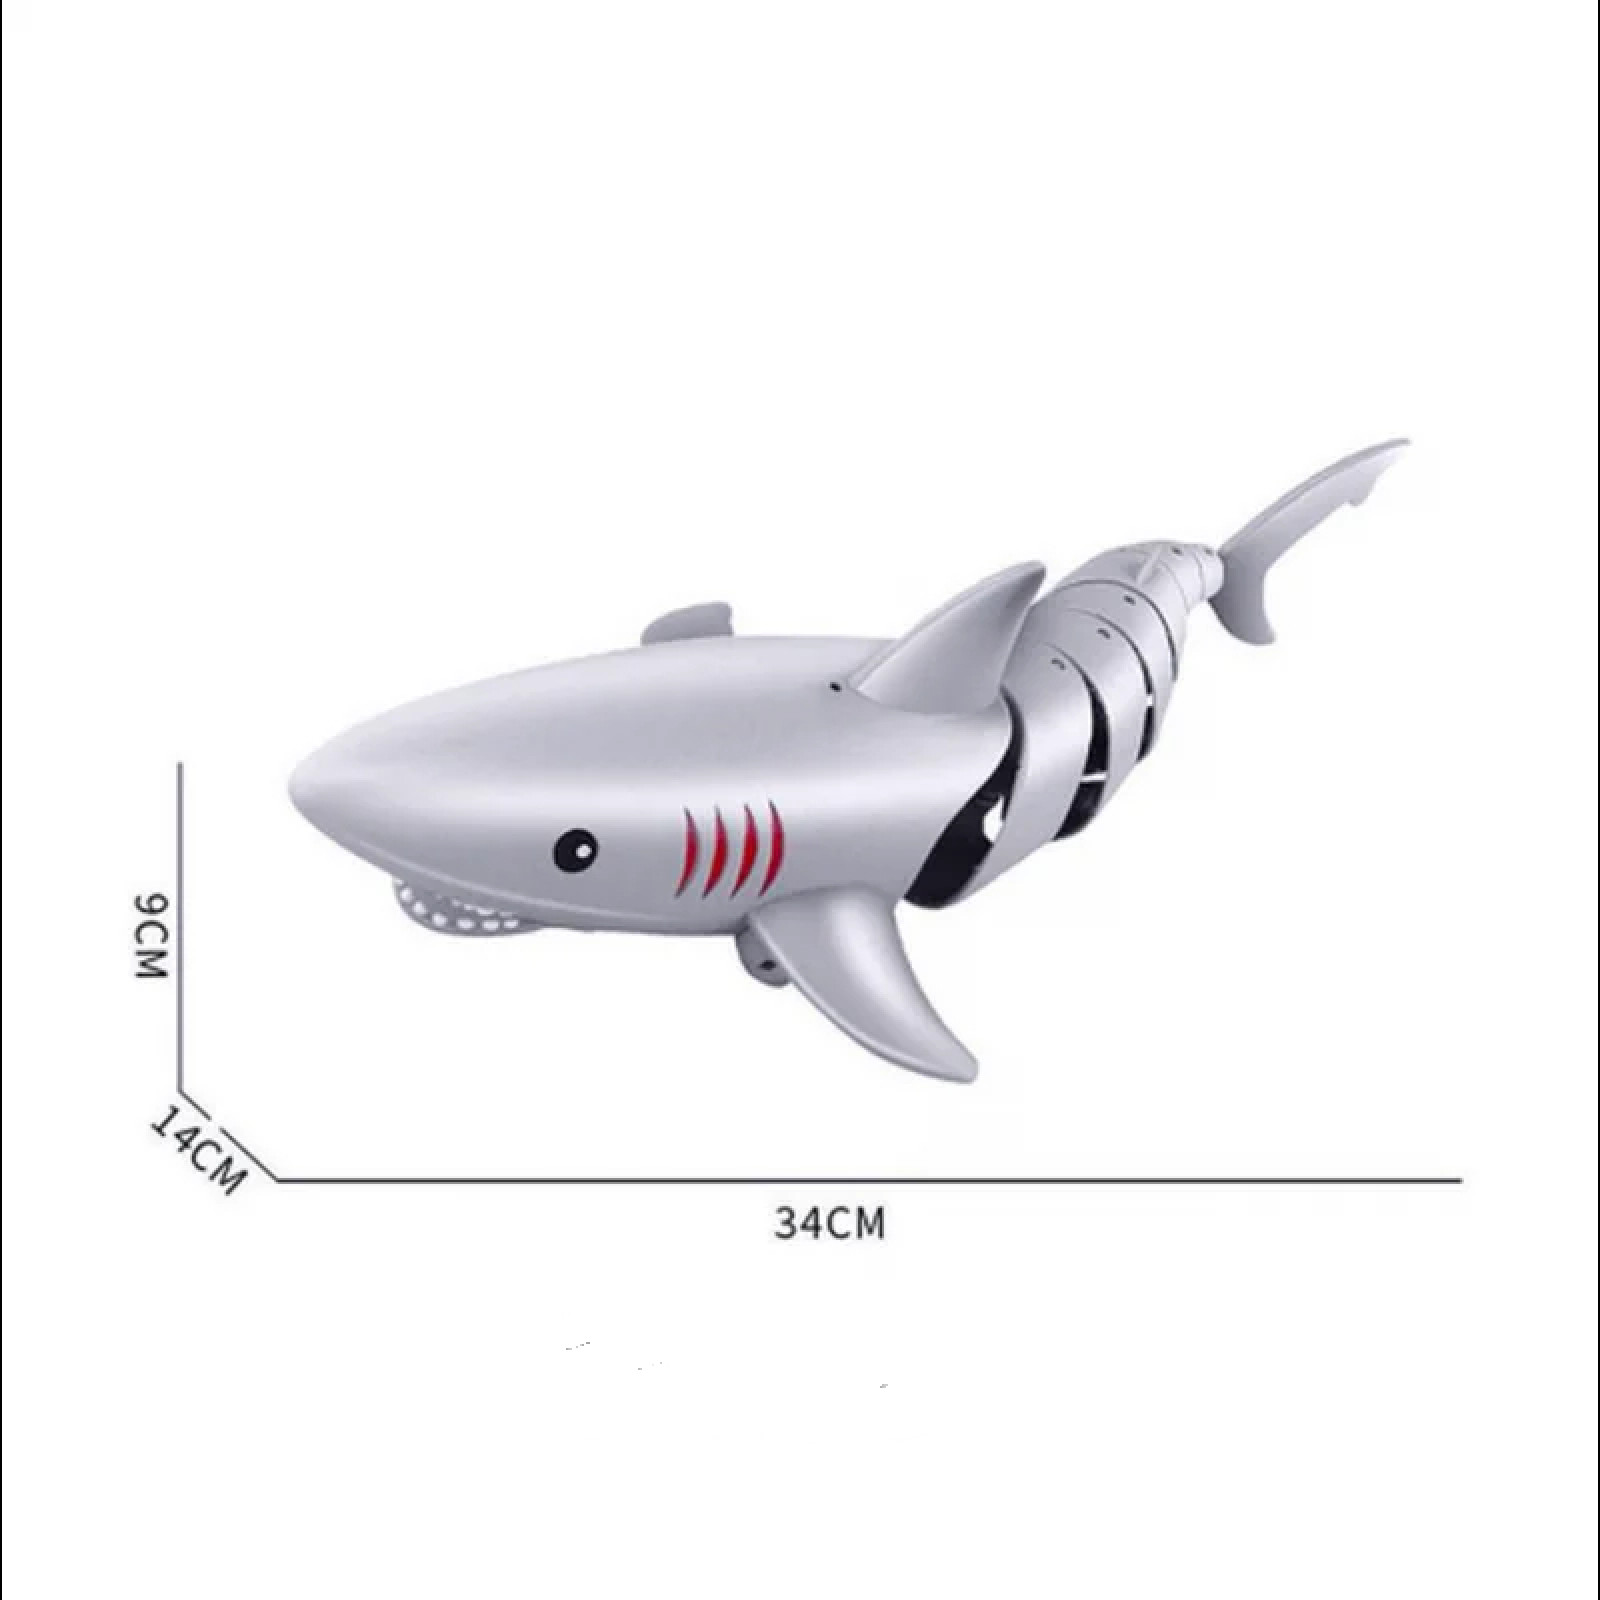 Игрушка 3D акула Shark на радиоуправлении серая 203182